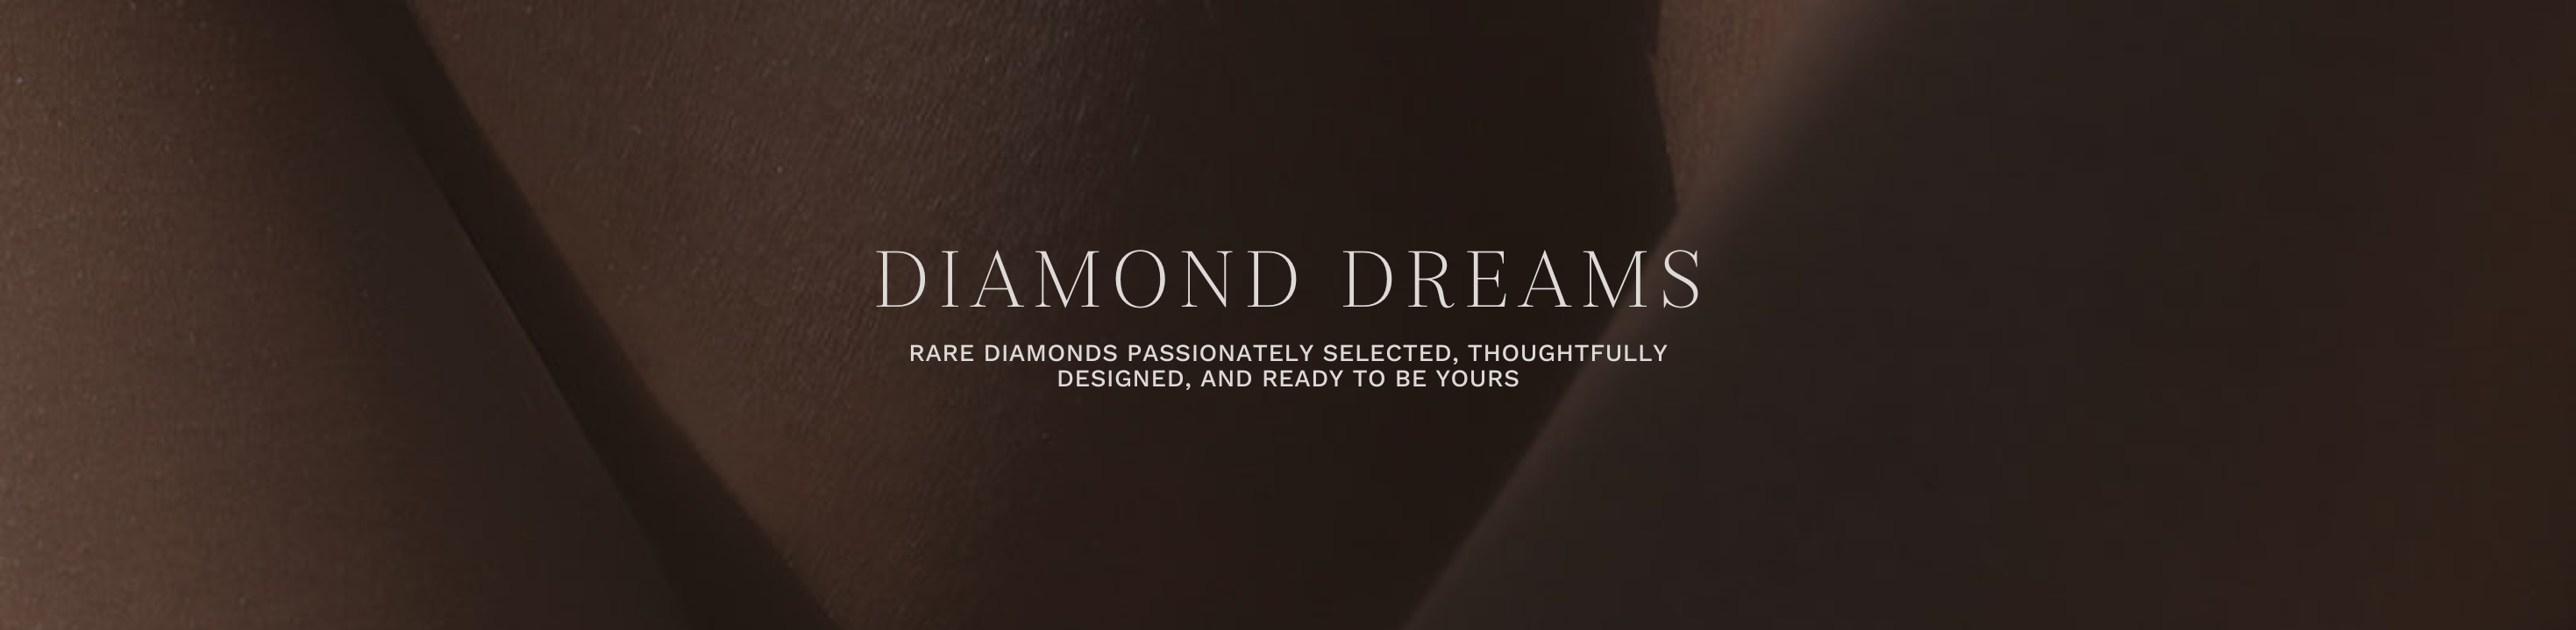 DIAMOND DREAMS